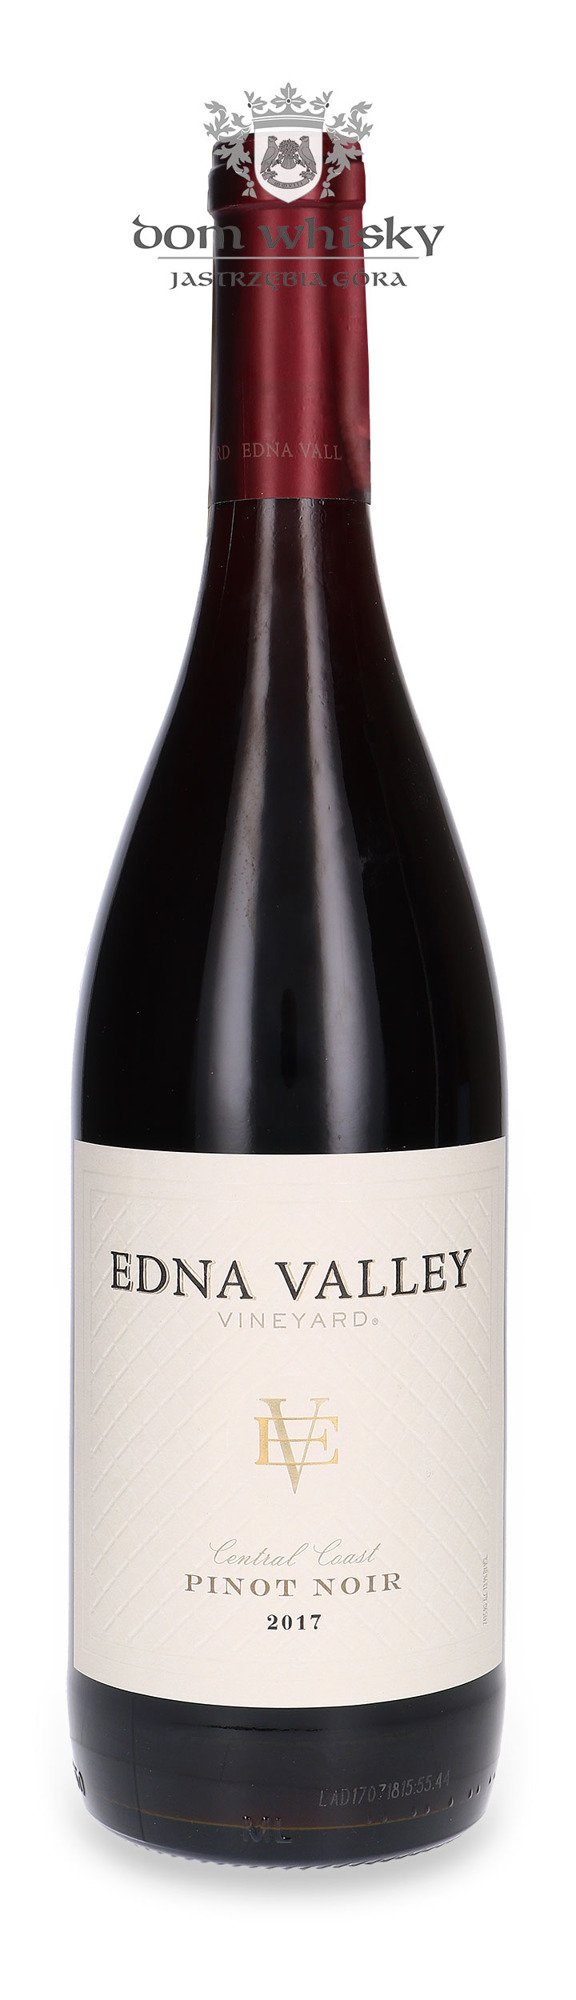 Edna valley pinot noir